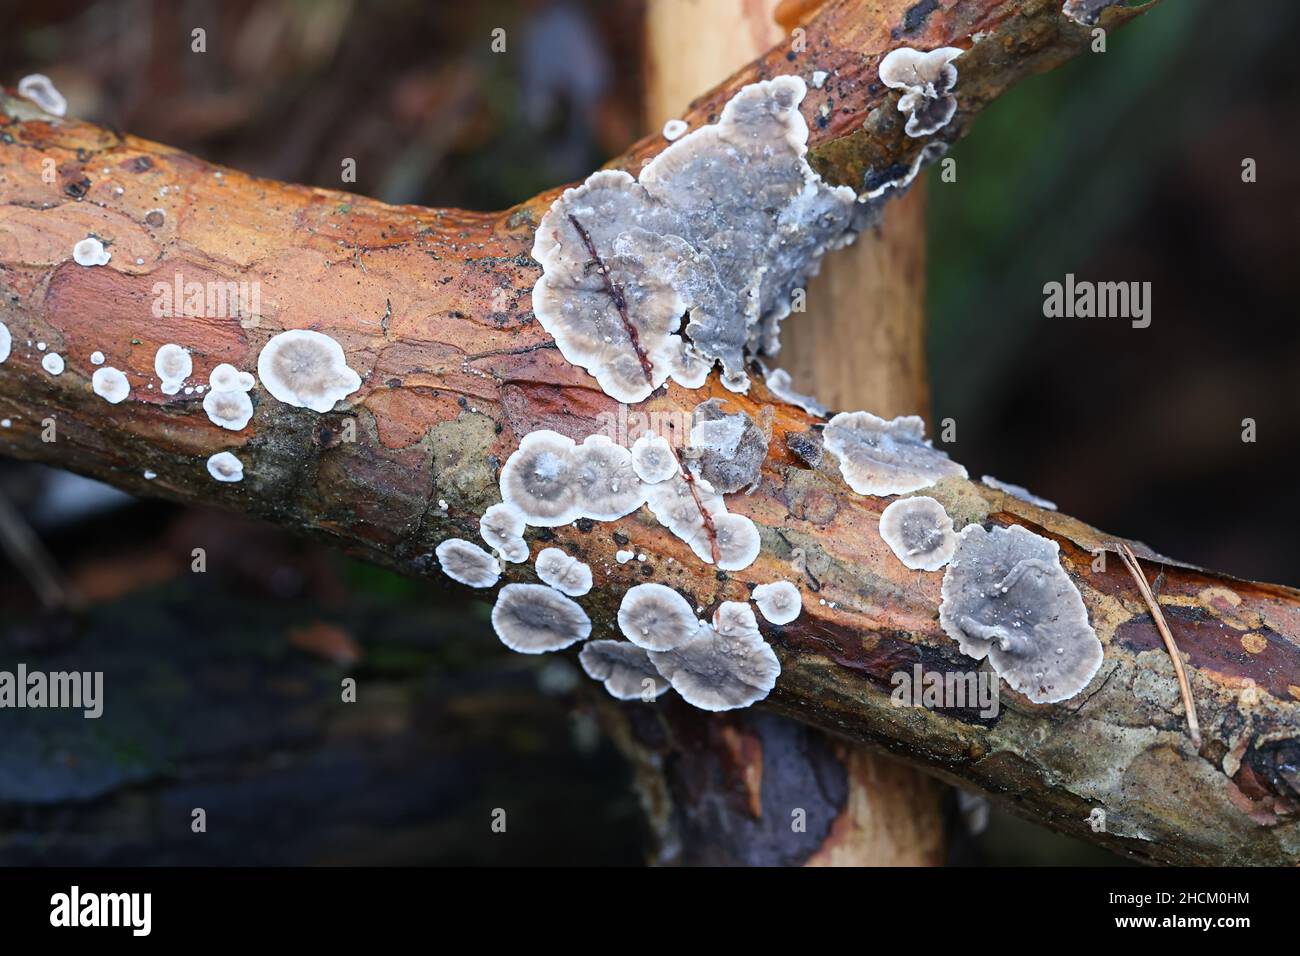 Stereum sanguinolentum, known as bleeding conifer crust, wild fungus from Finland Stock Photo